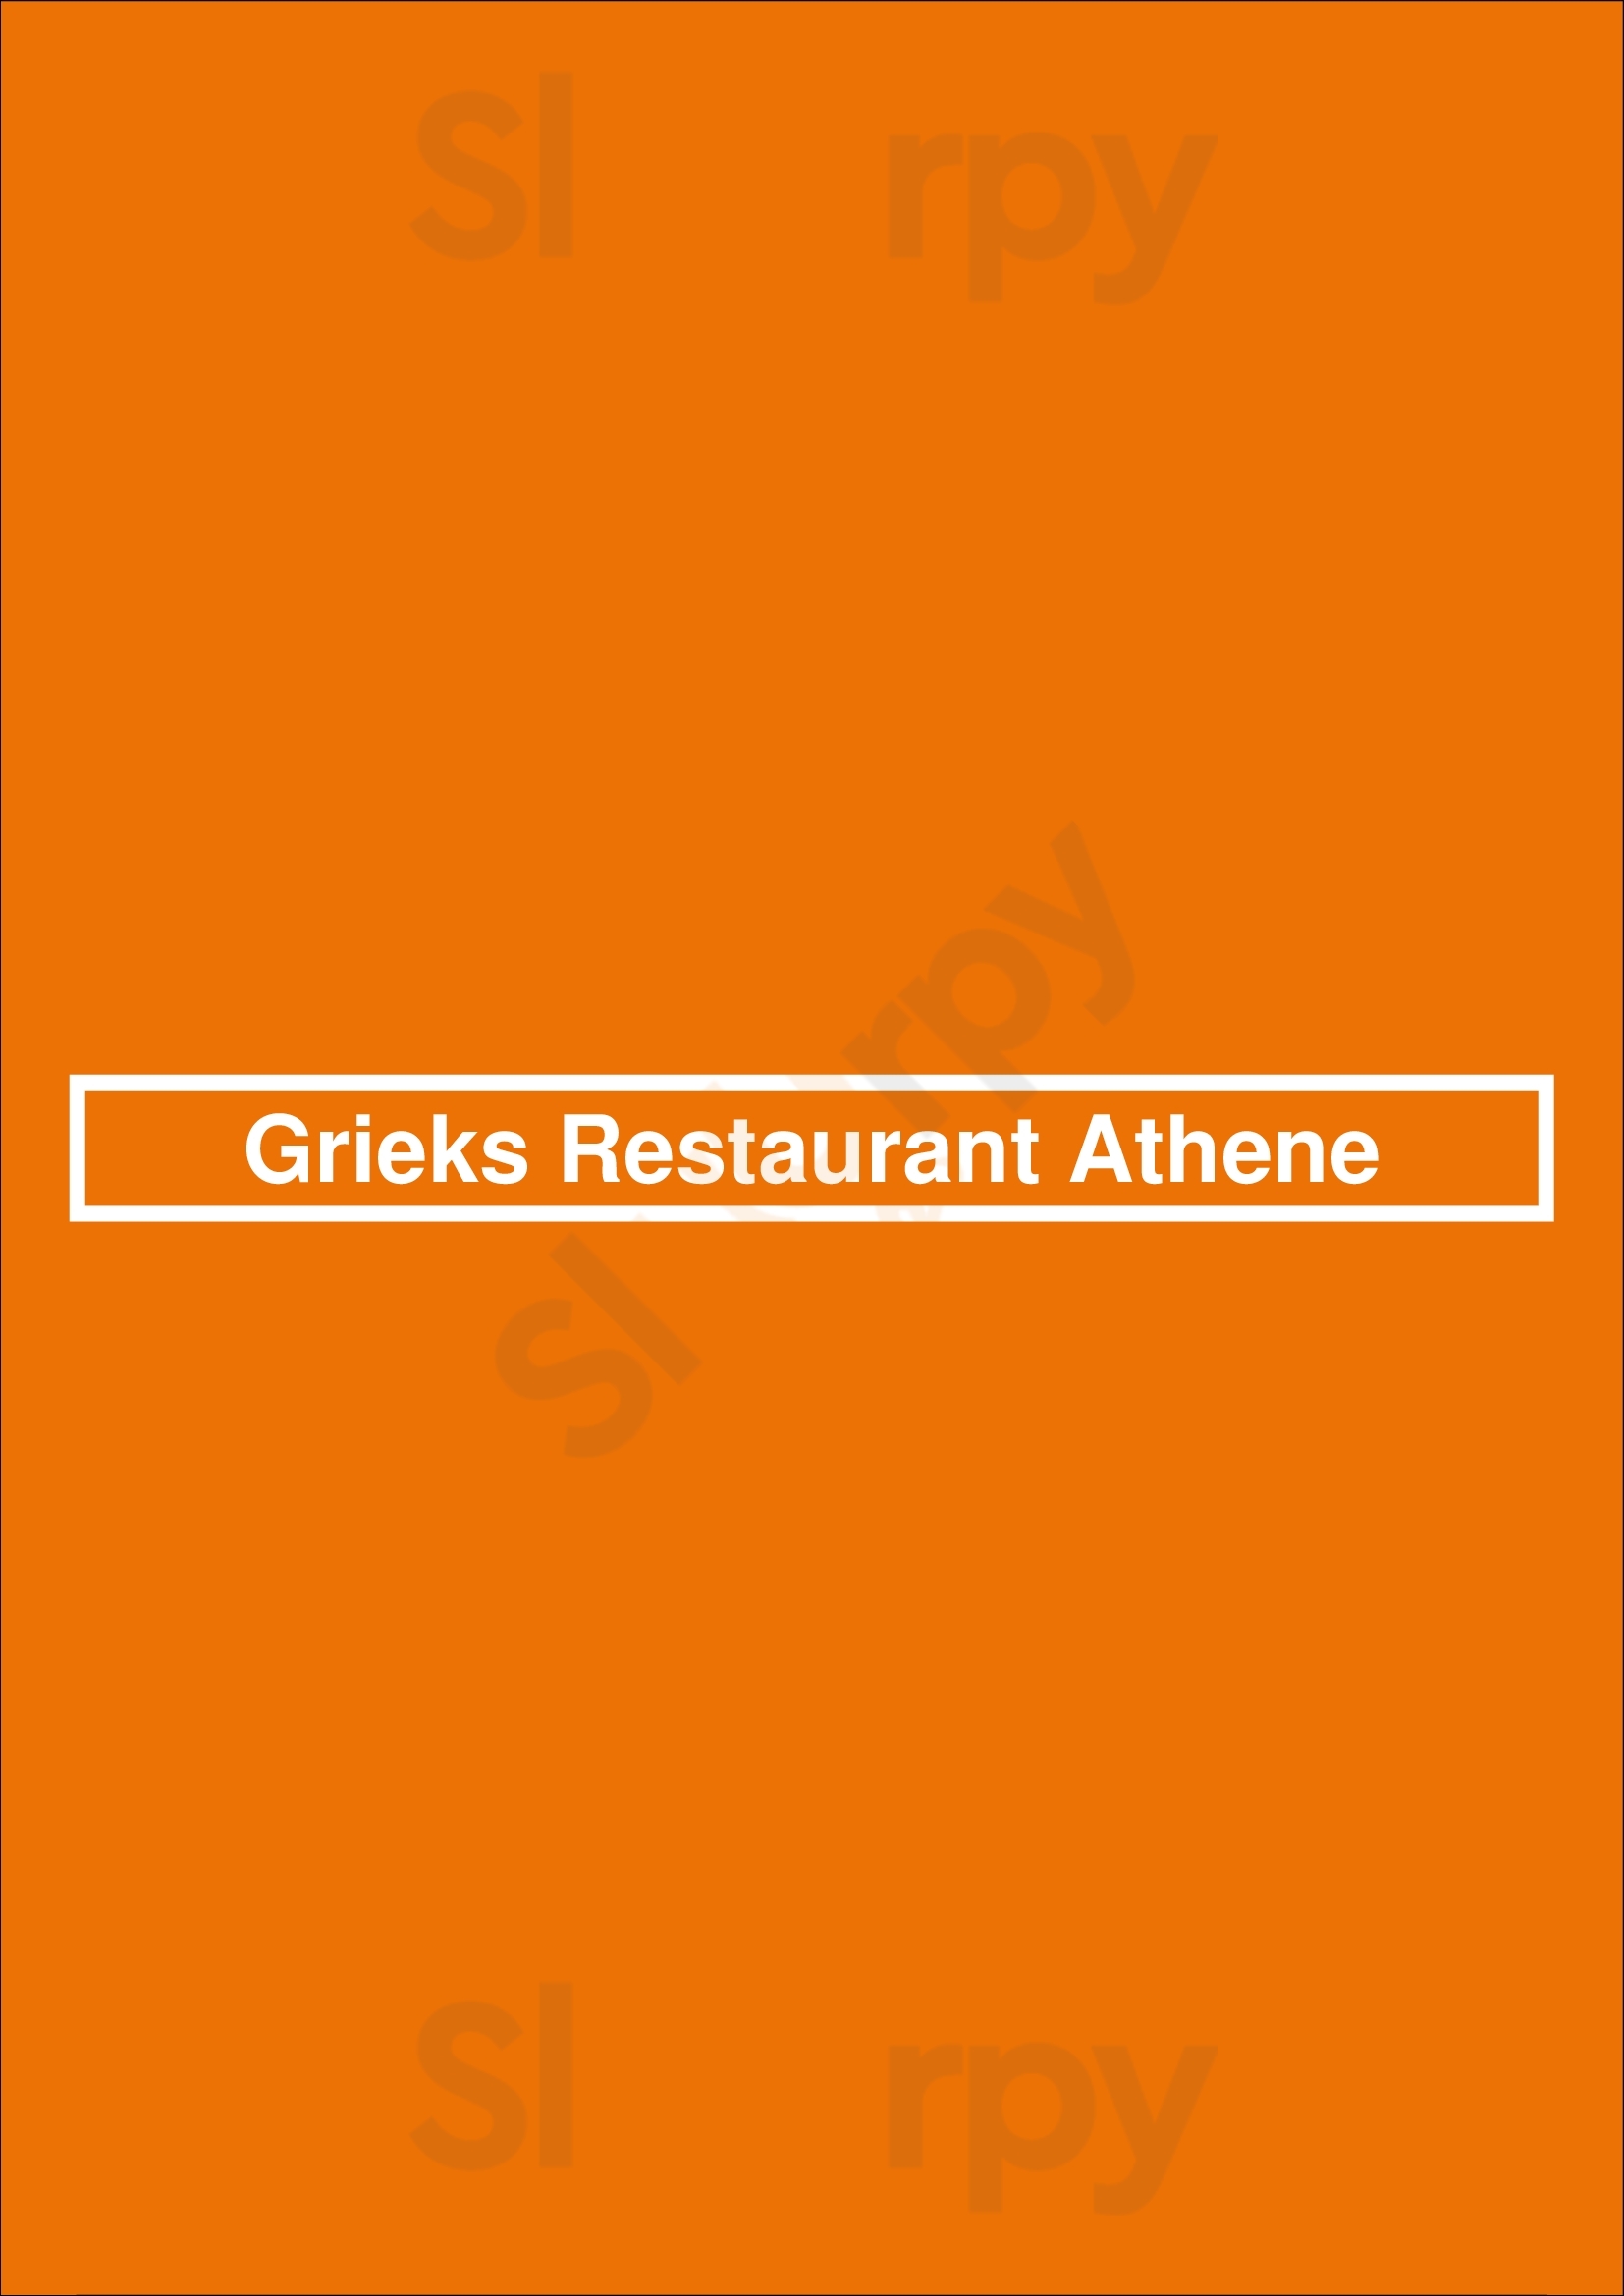 Grieks Restaurant Athene Gulpen Menu - 1